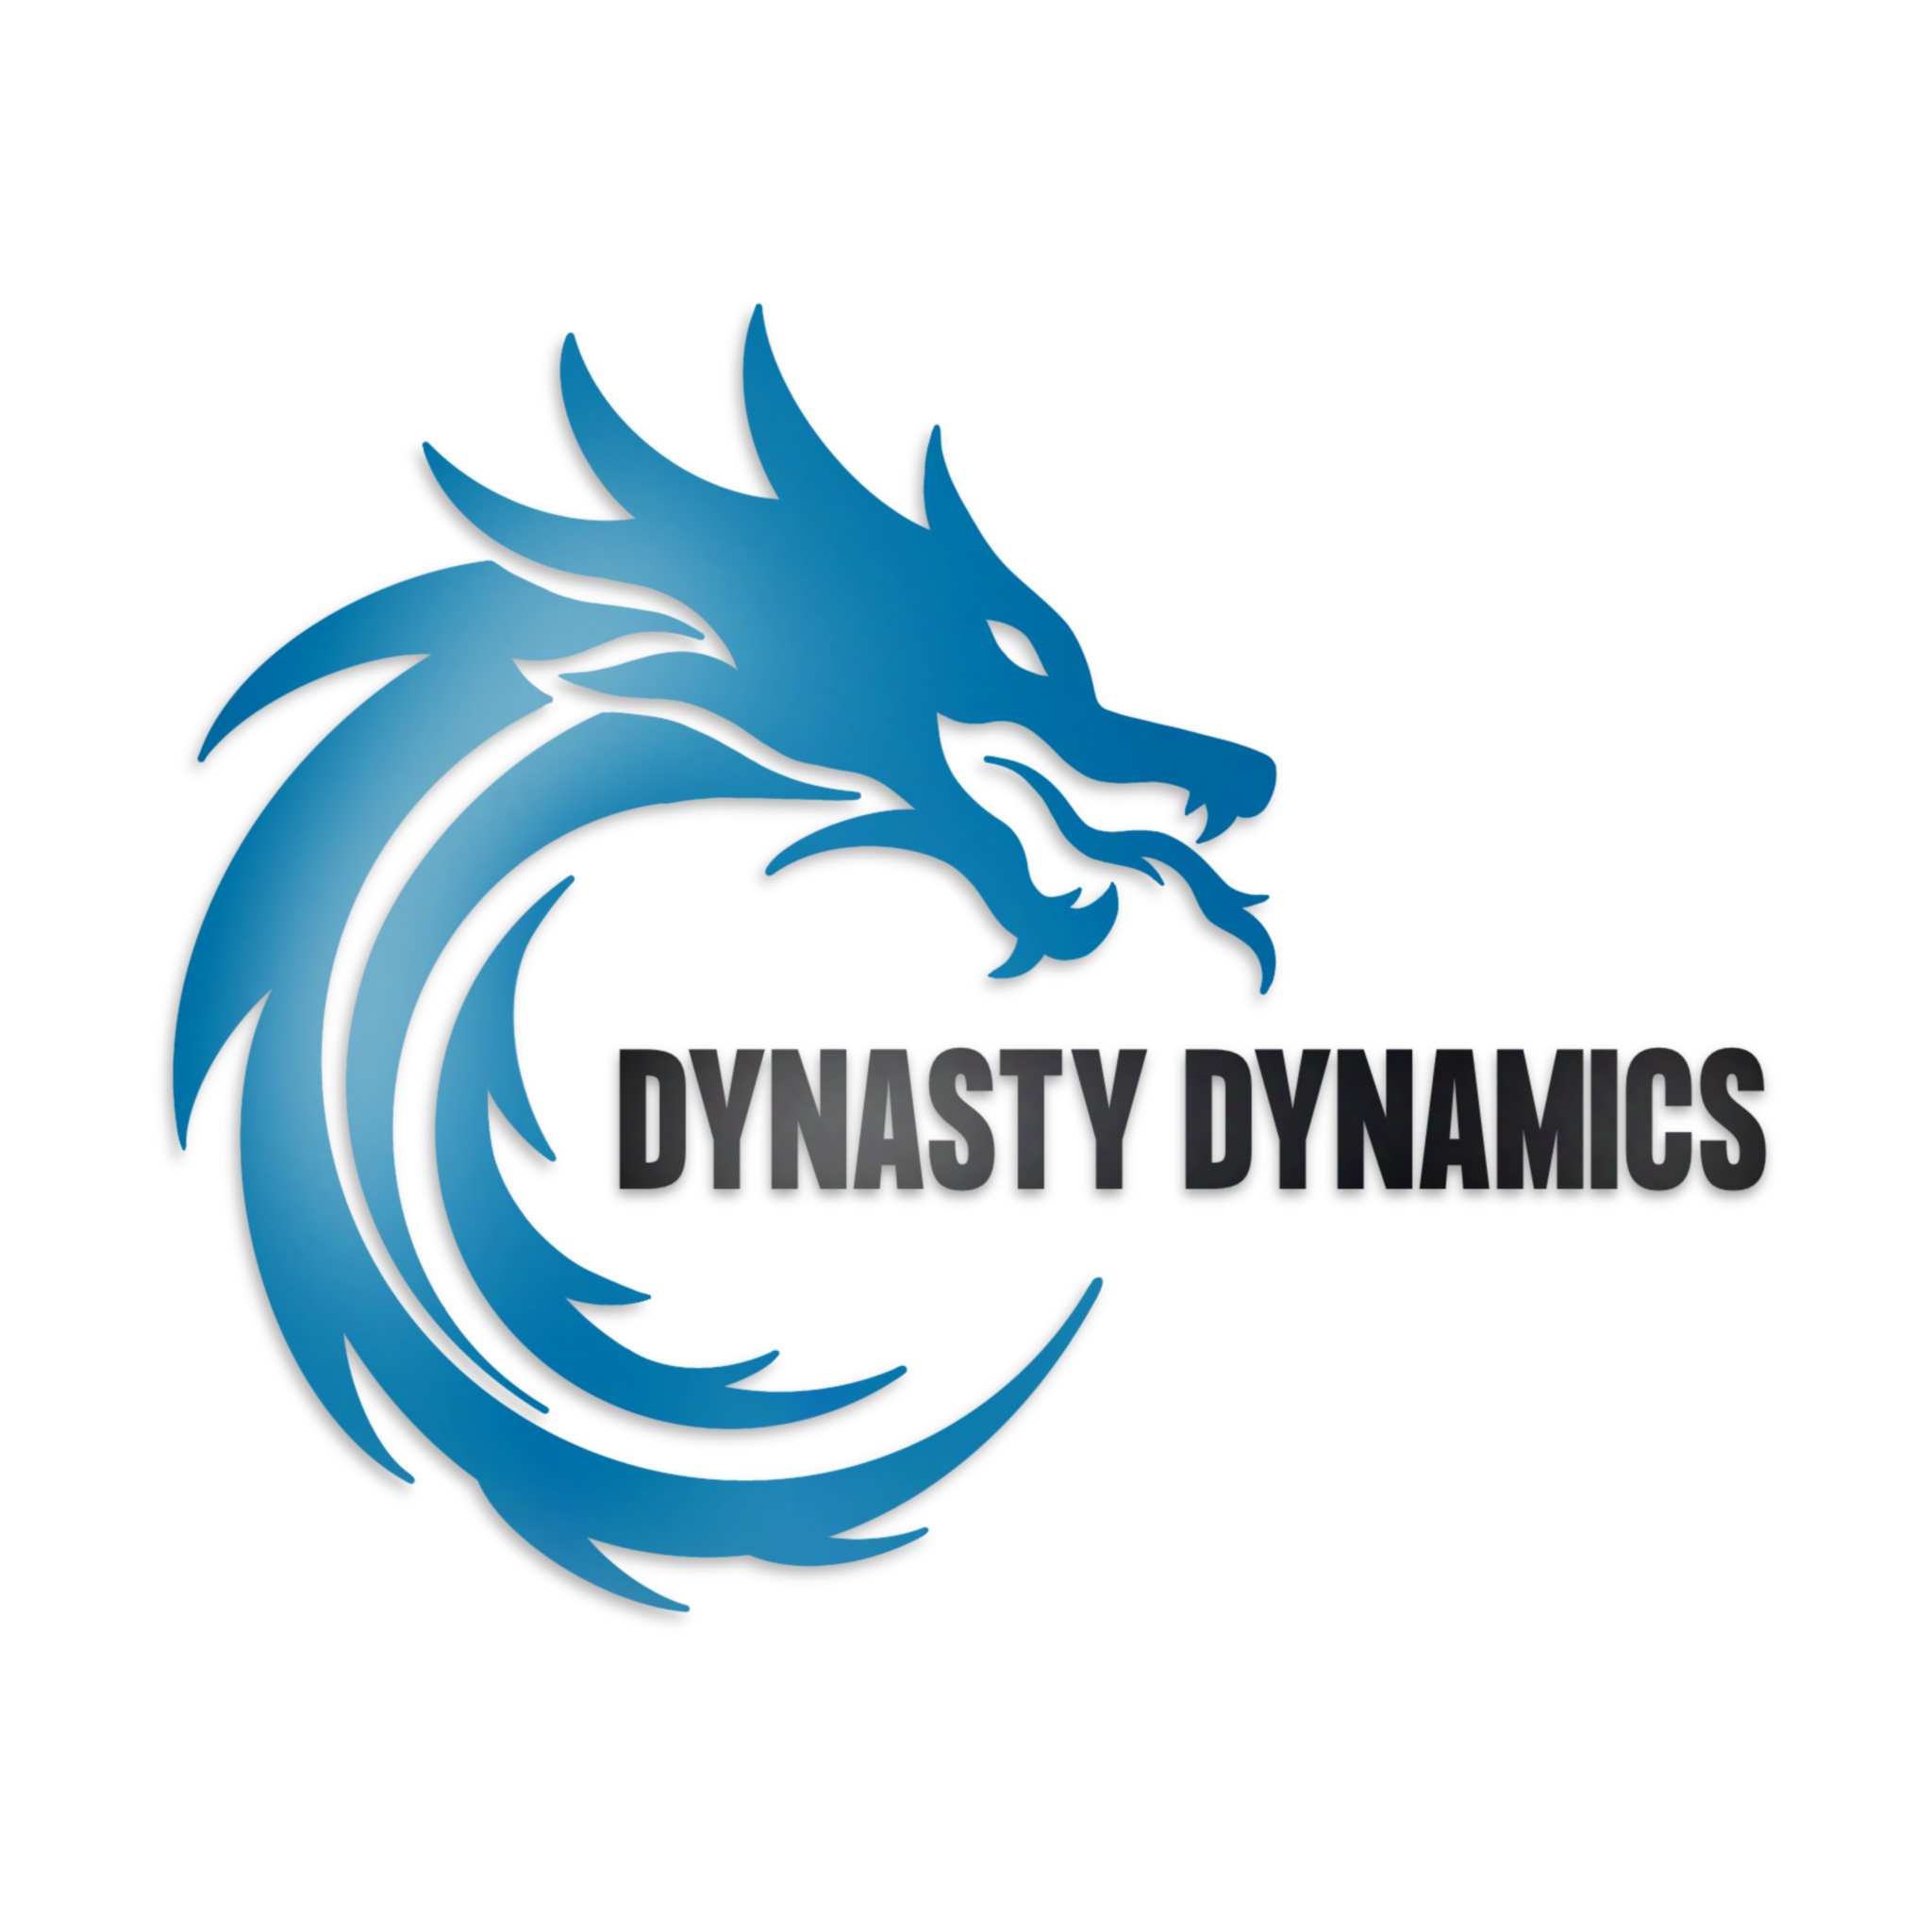 Dynasty Dynamics